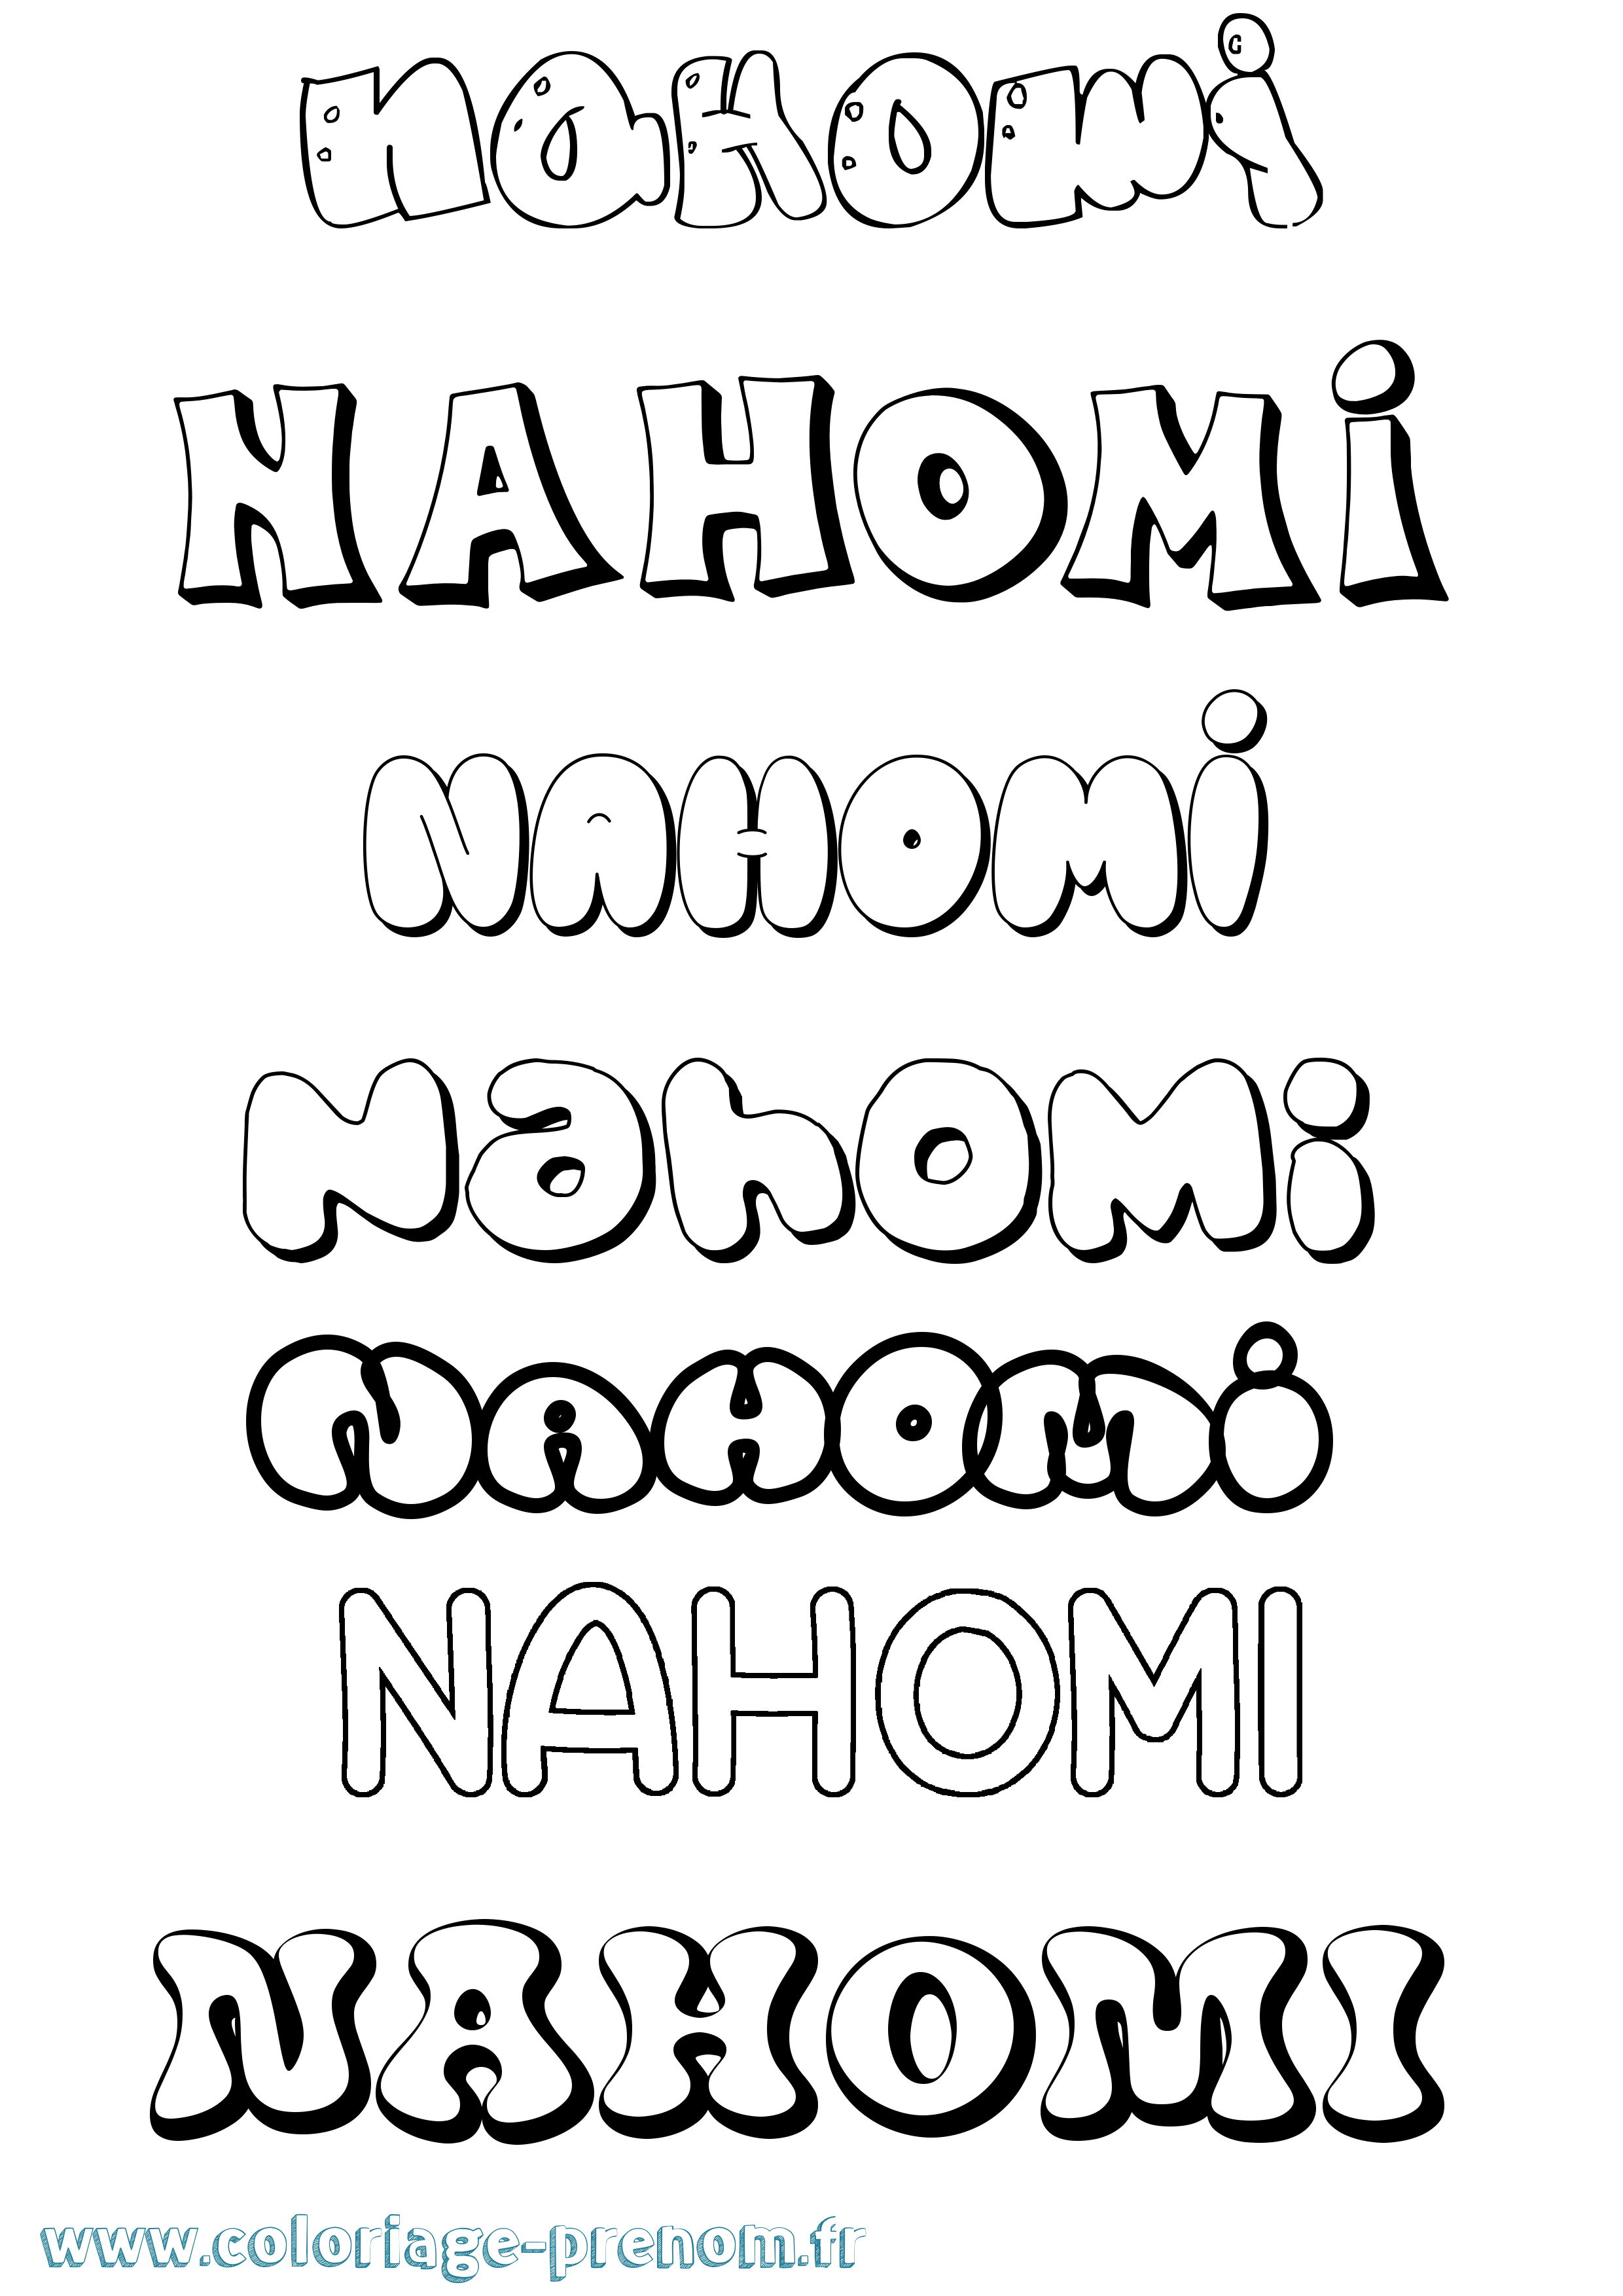 Coloriage prénom Nahomi Bubble